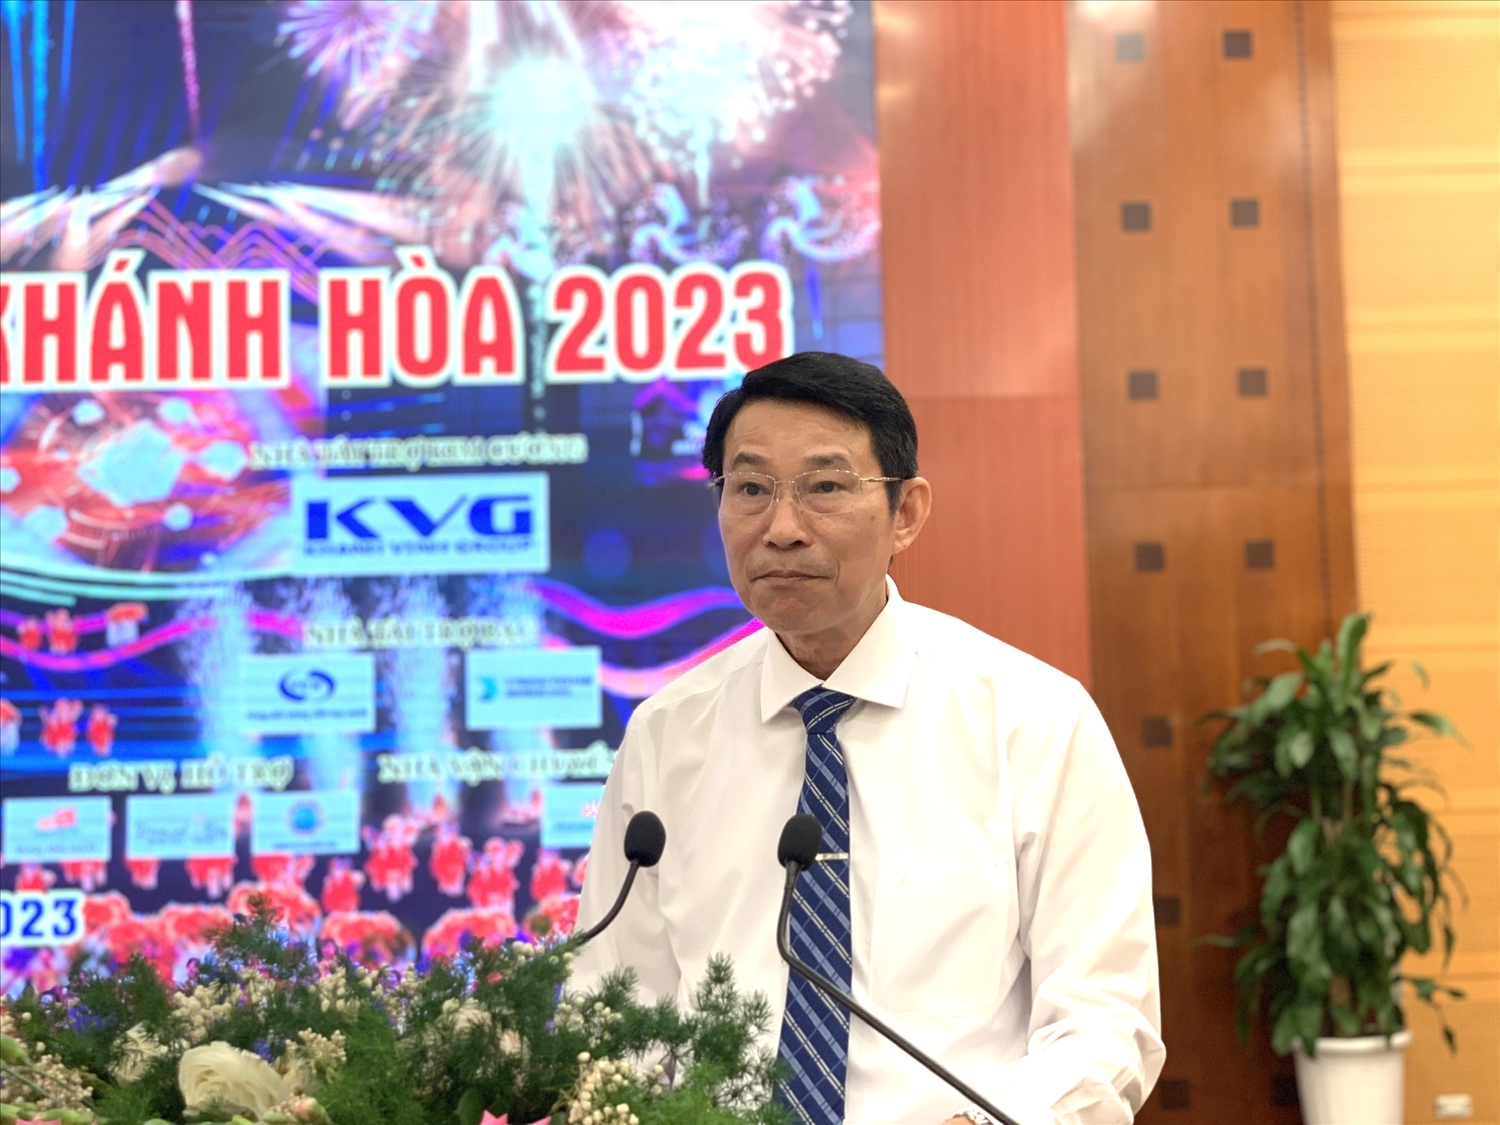 Ông Đinh Văn Thiệu, Phó Chủ tịch UBND tỉnh Khánh Hoà phát biểu tại buổi họp báo